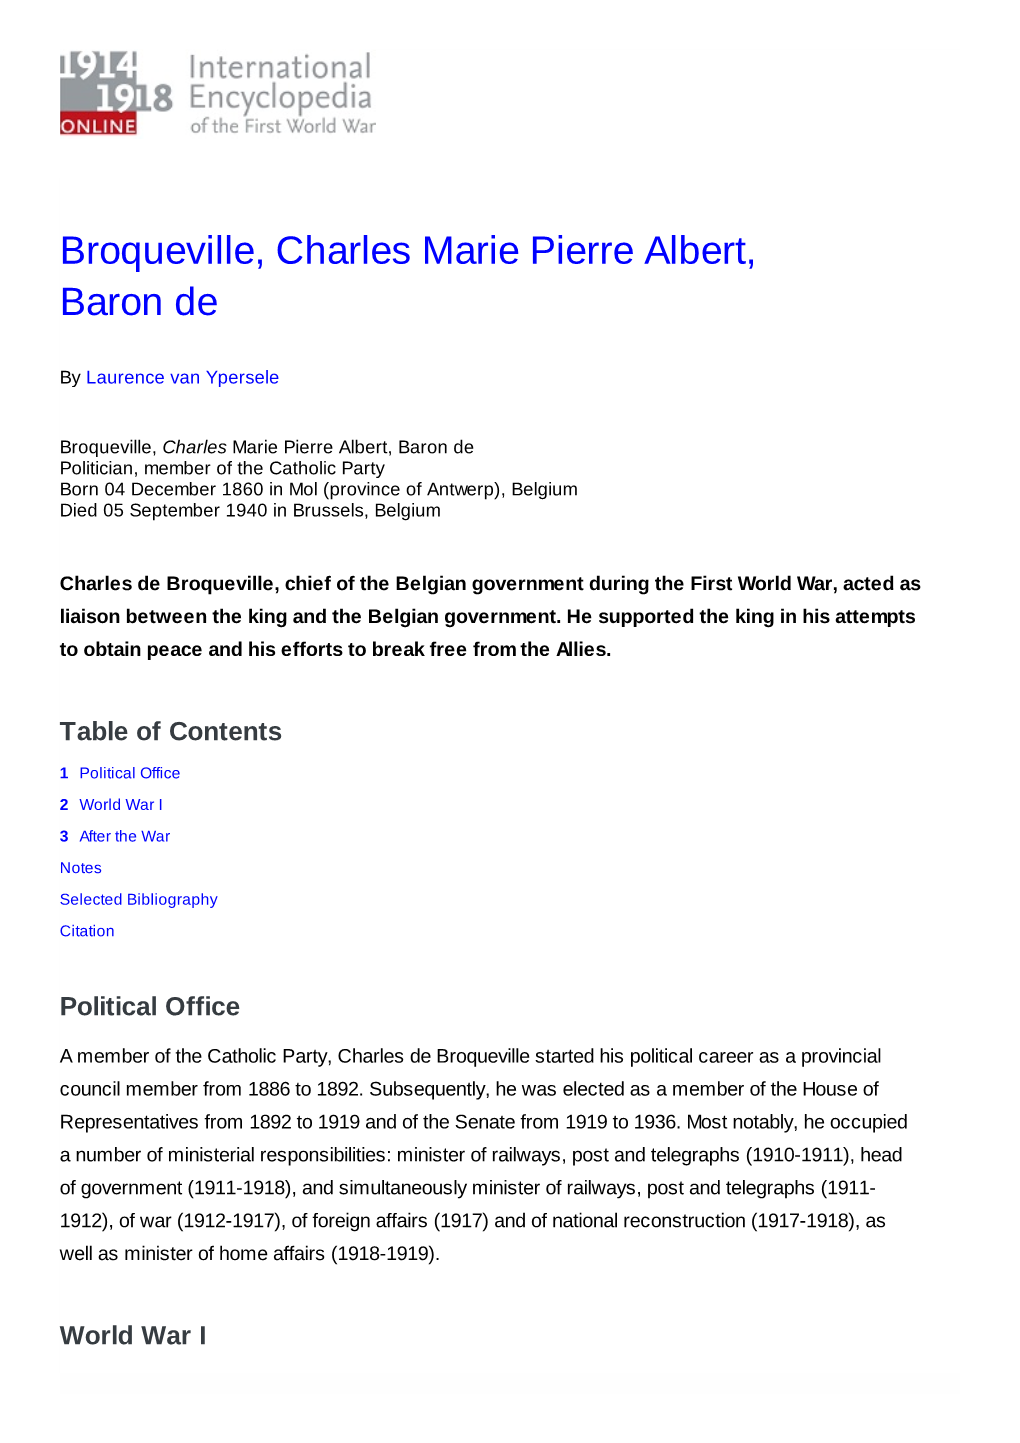 Broqueville, Charles Marie Pierre Albert, Baron De